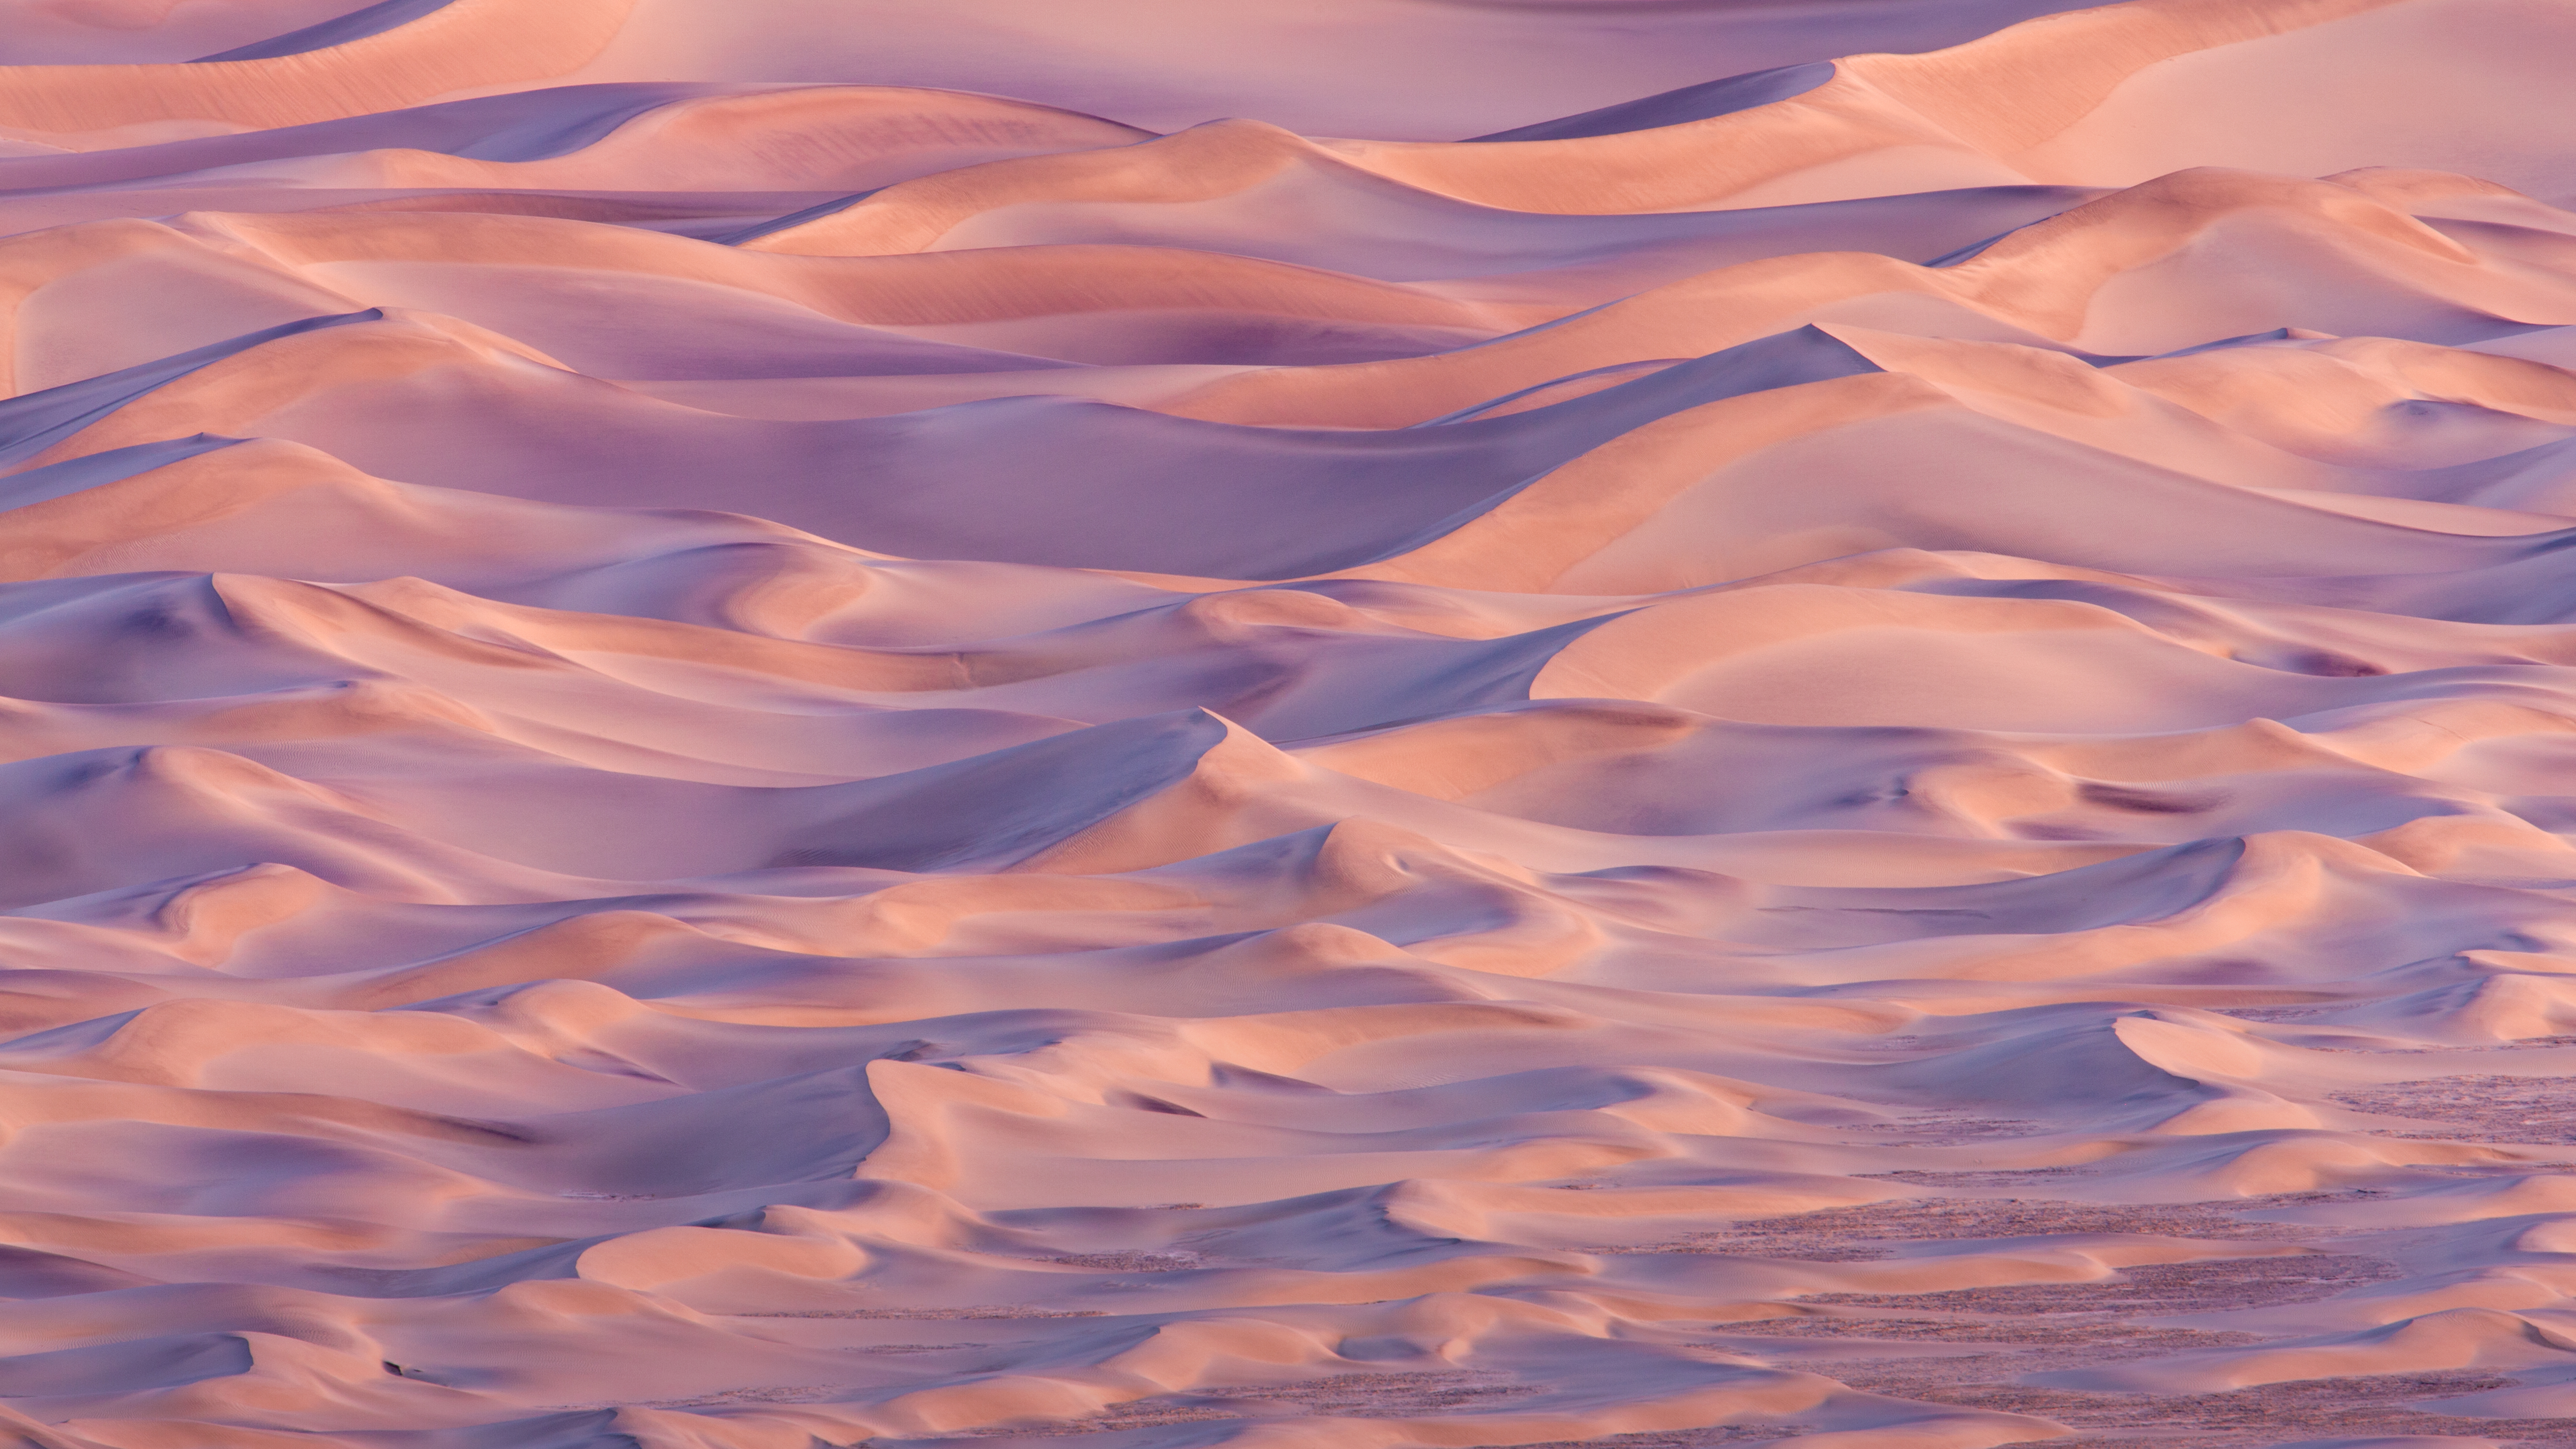 os x mavericks wallpaper,himmel,wüste,wolke,sand,düne